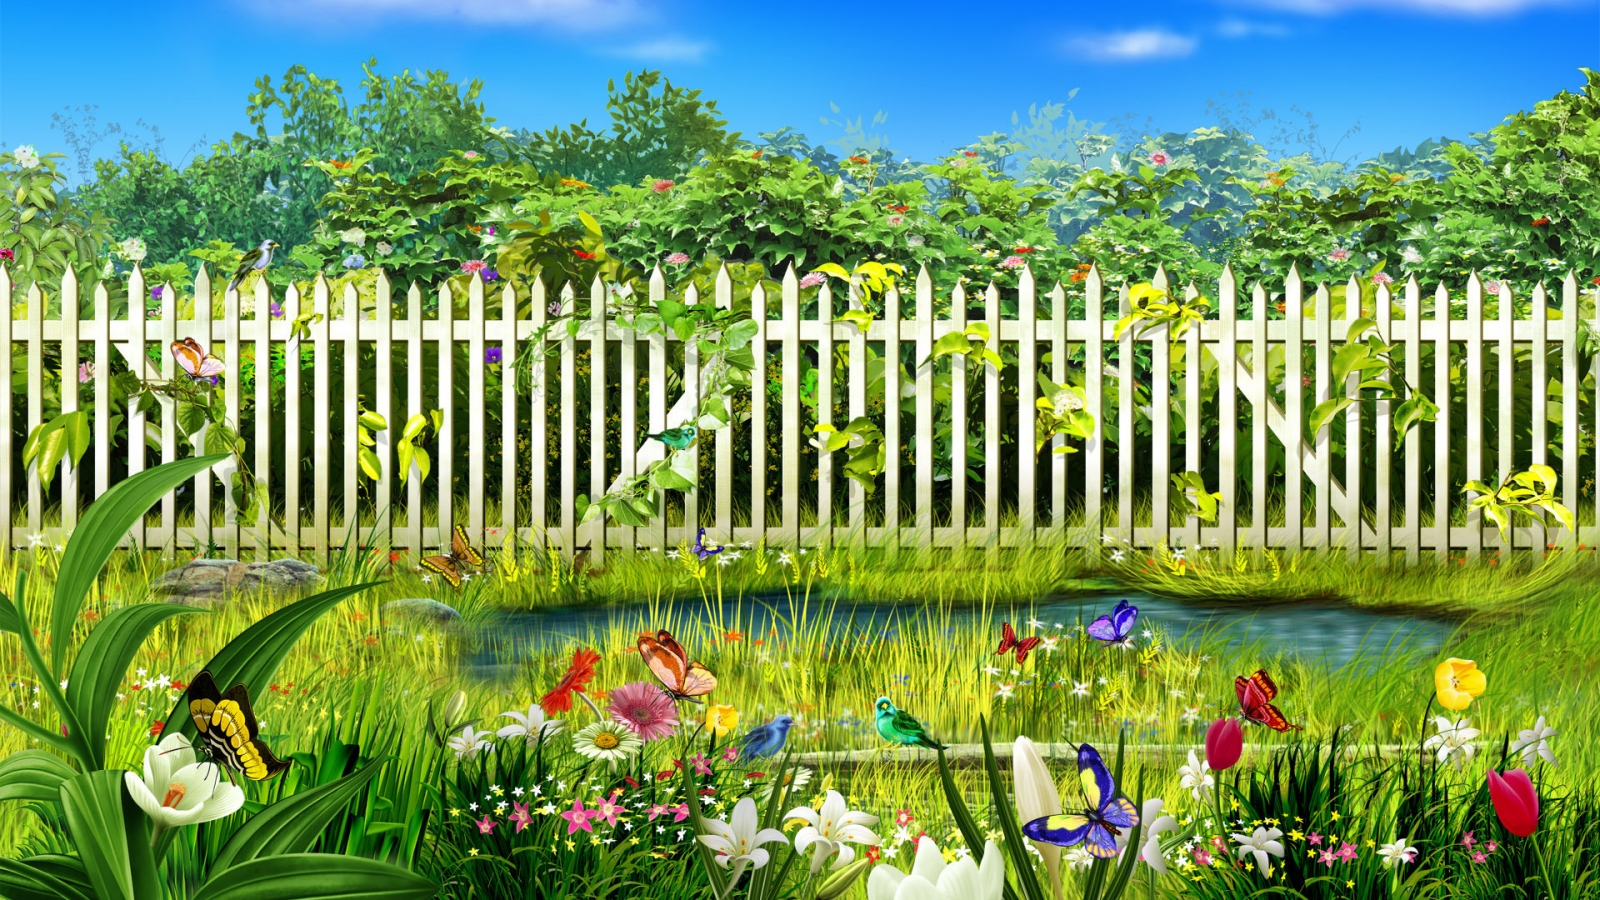 Spring garden for 1600 x 900 HDTV resolution